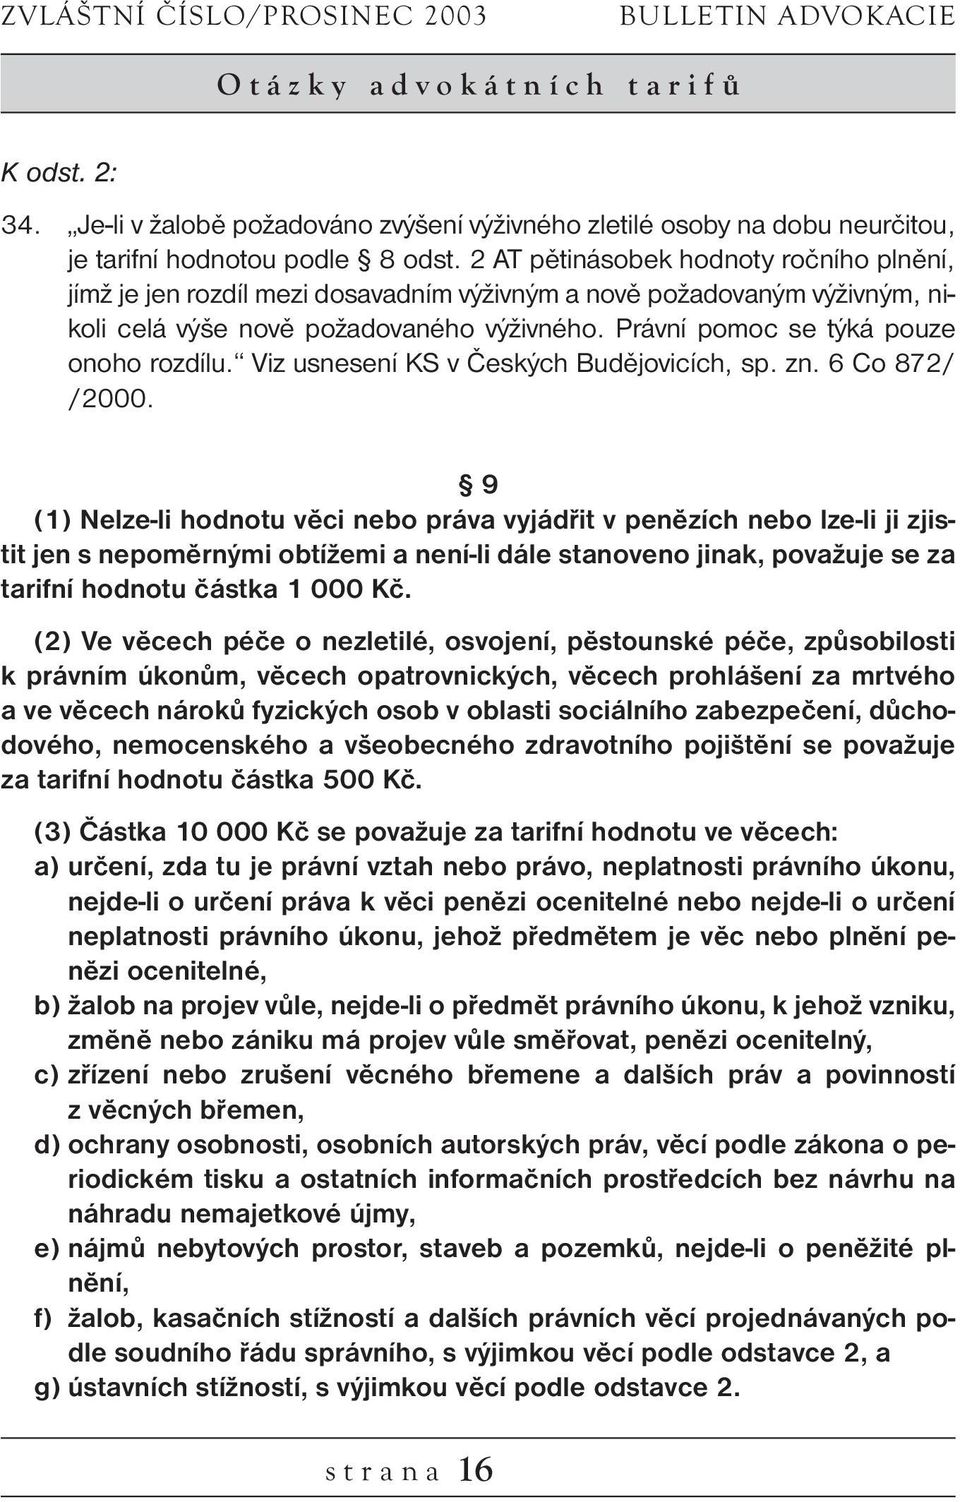 Právní pomoc se týká pouze onoho rozdílu. Viz usnesení KS v Českých Budějovicích, sp. zn. 6 Co 872/ /2000.